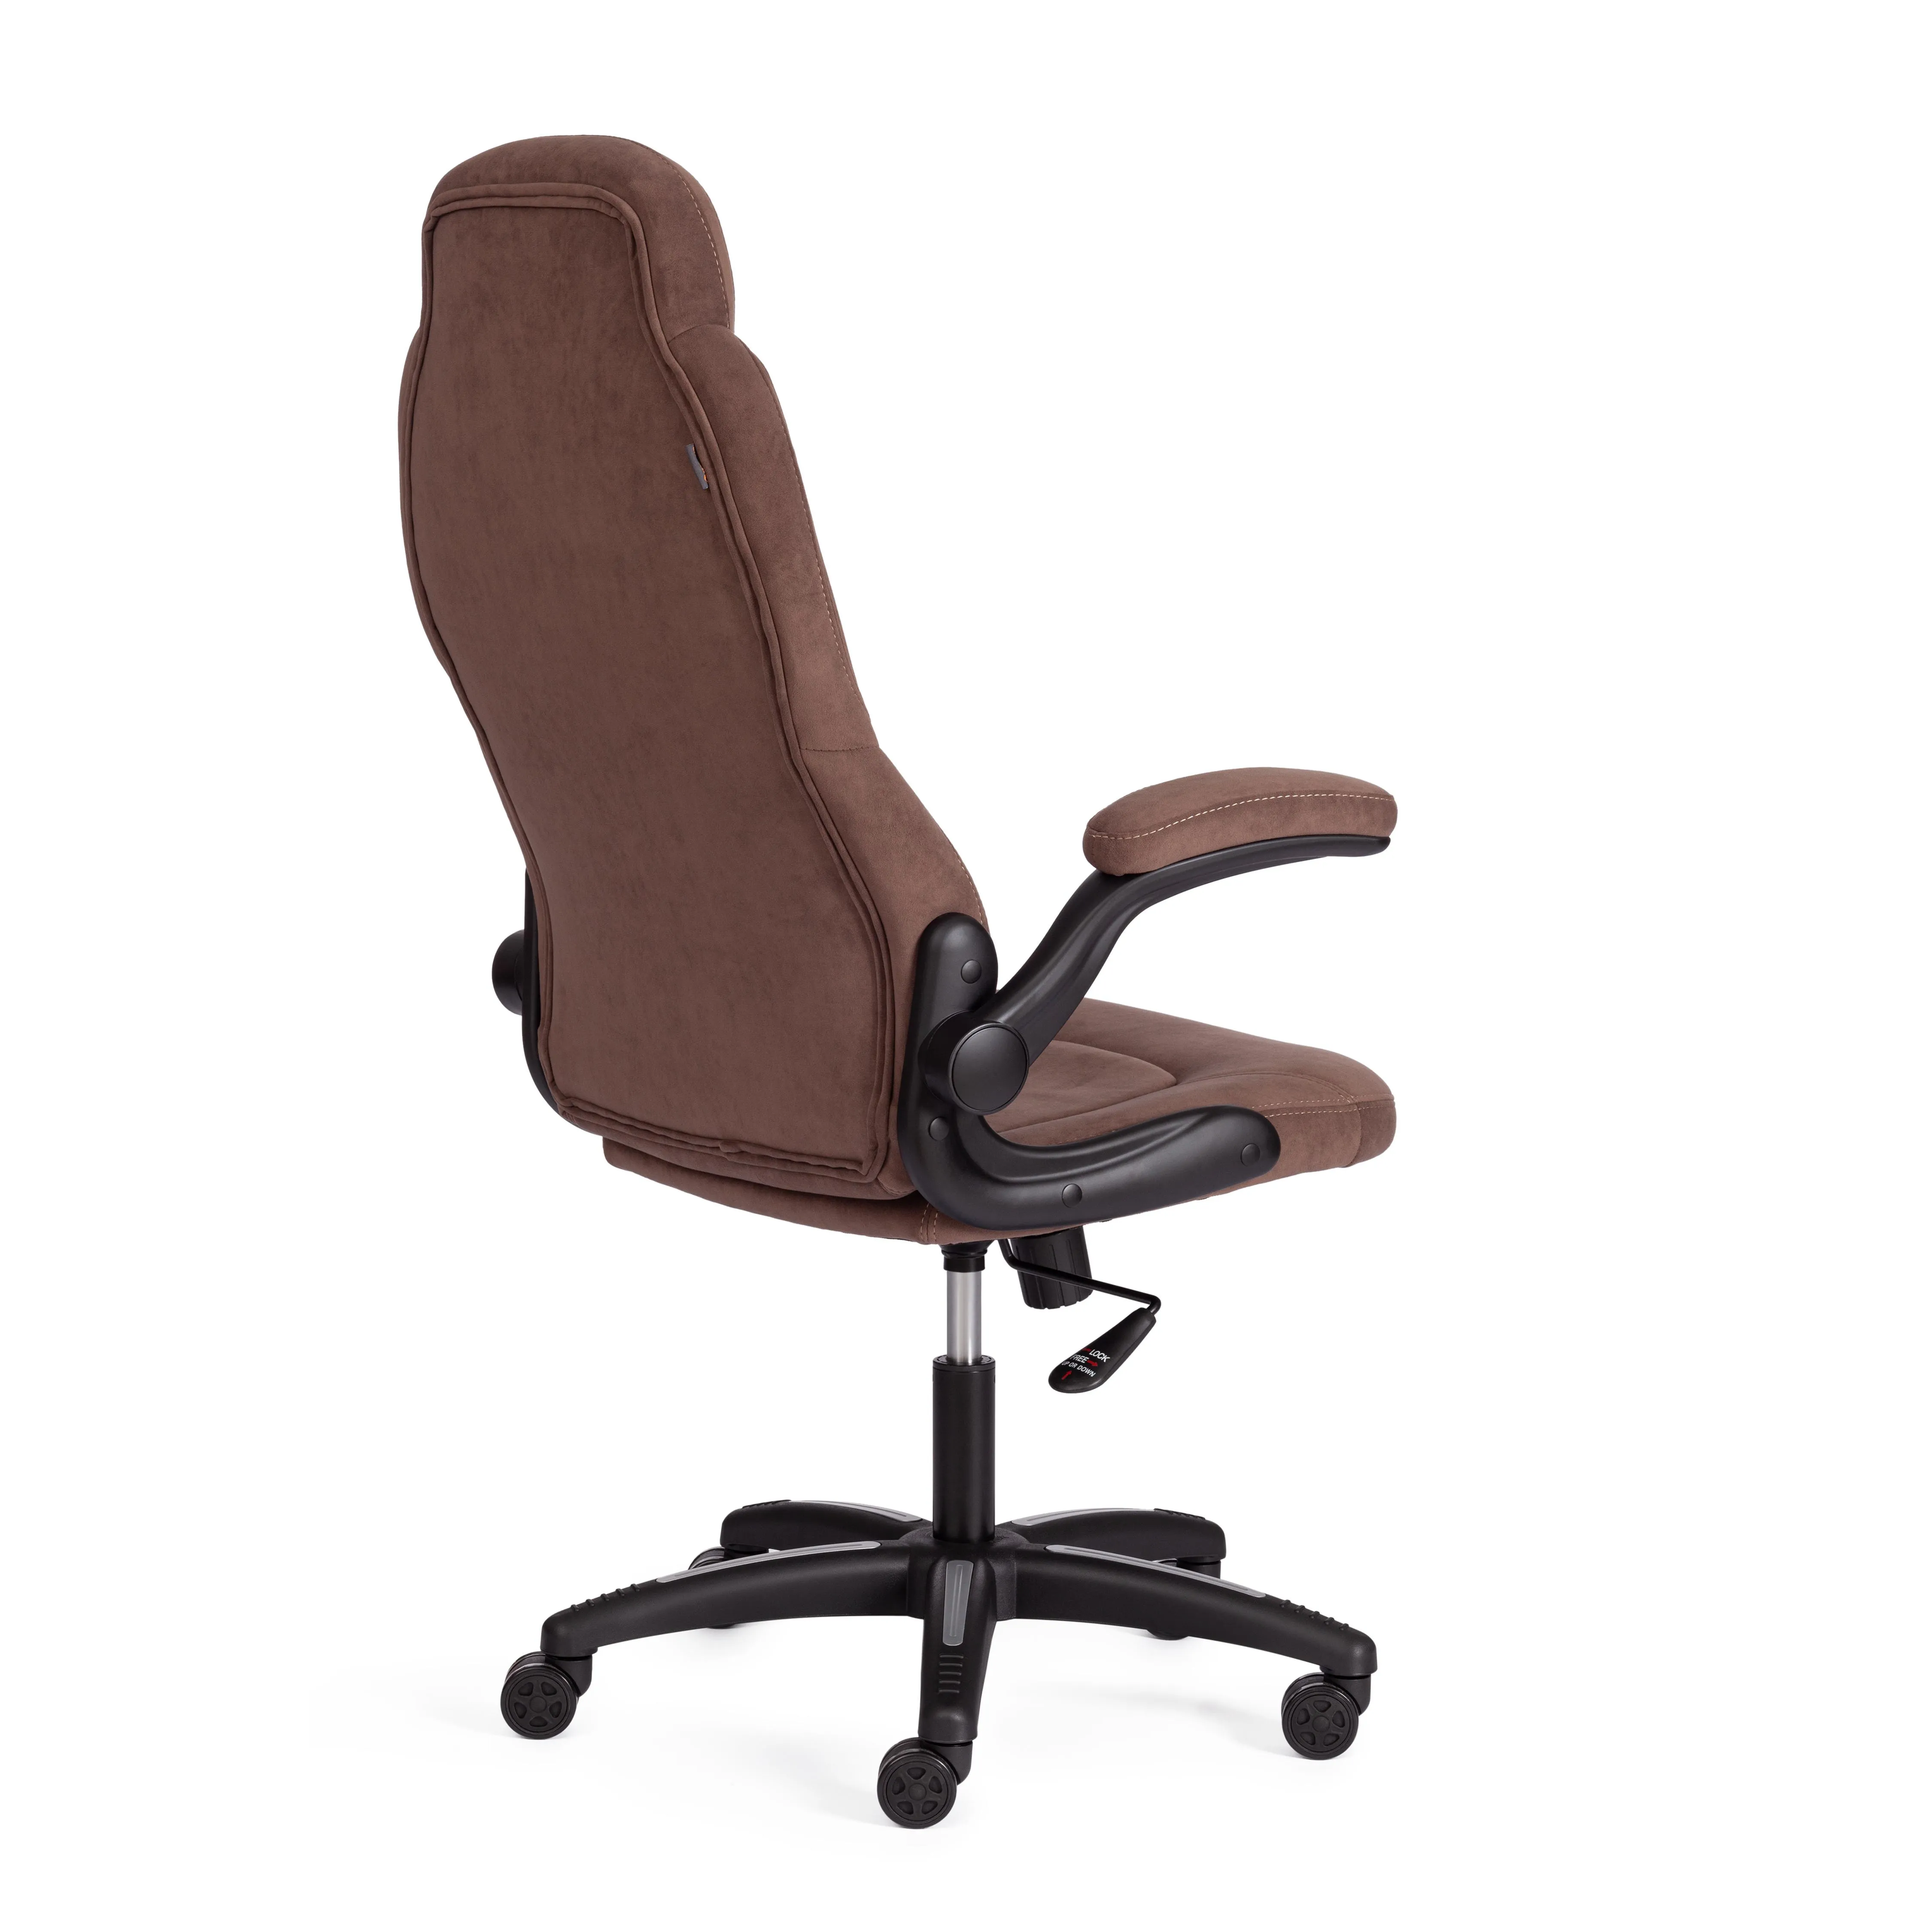 Кресло компьютерное BAZUKA флок коричневый